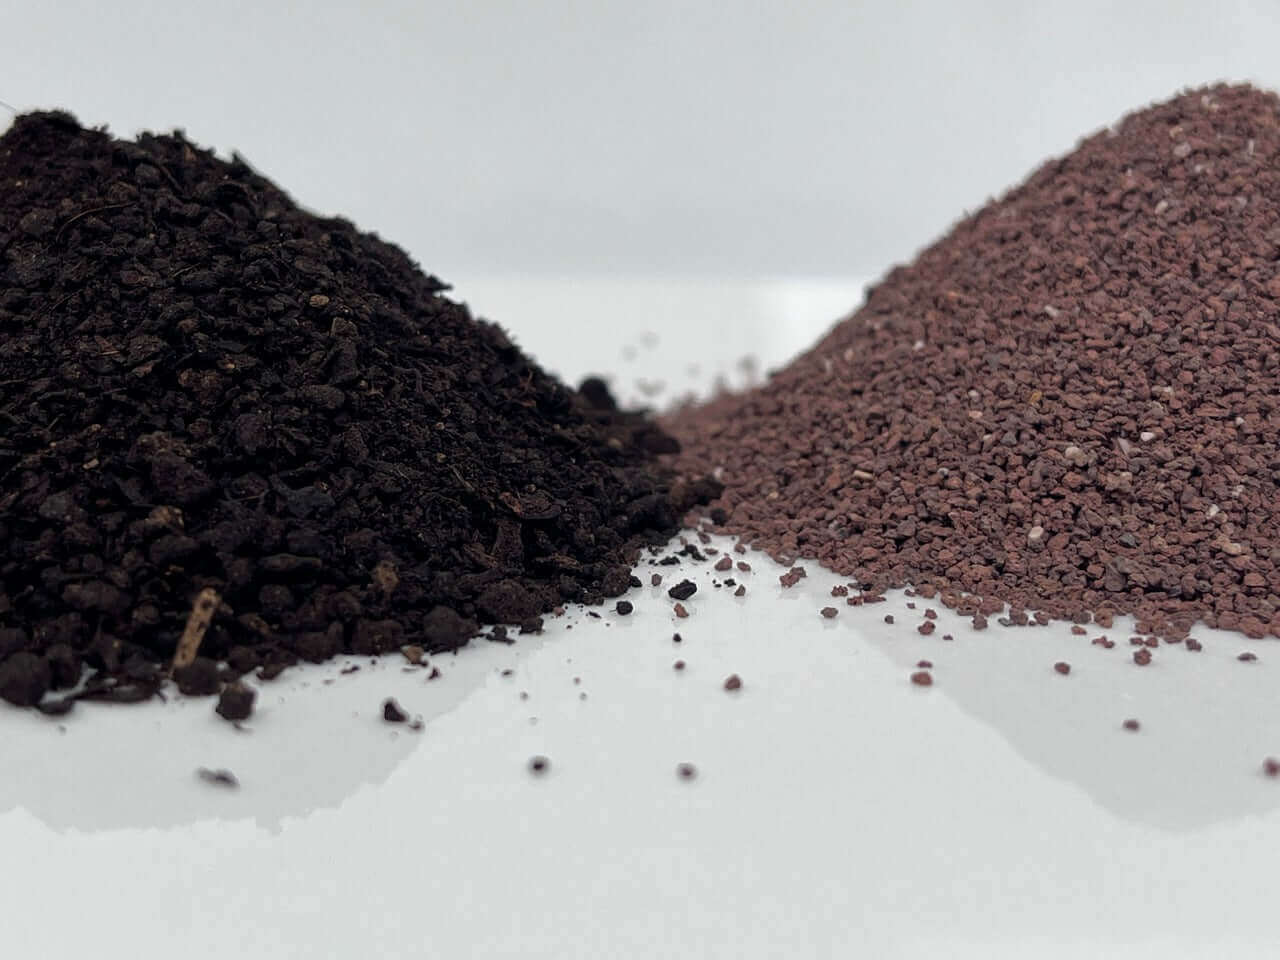 Bio Terra Mix - Compost Eco Completo